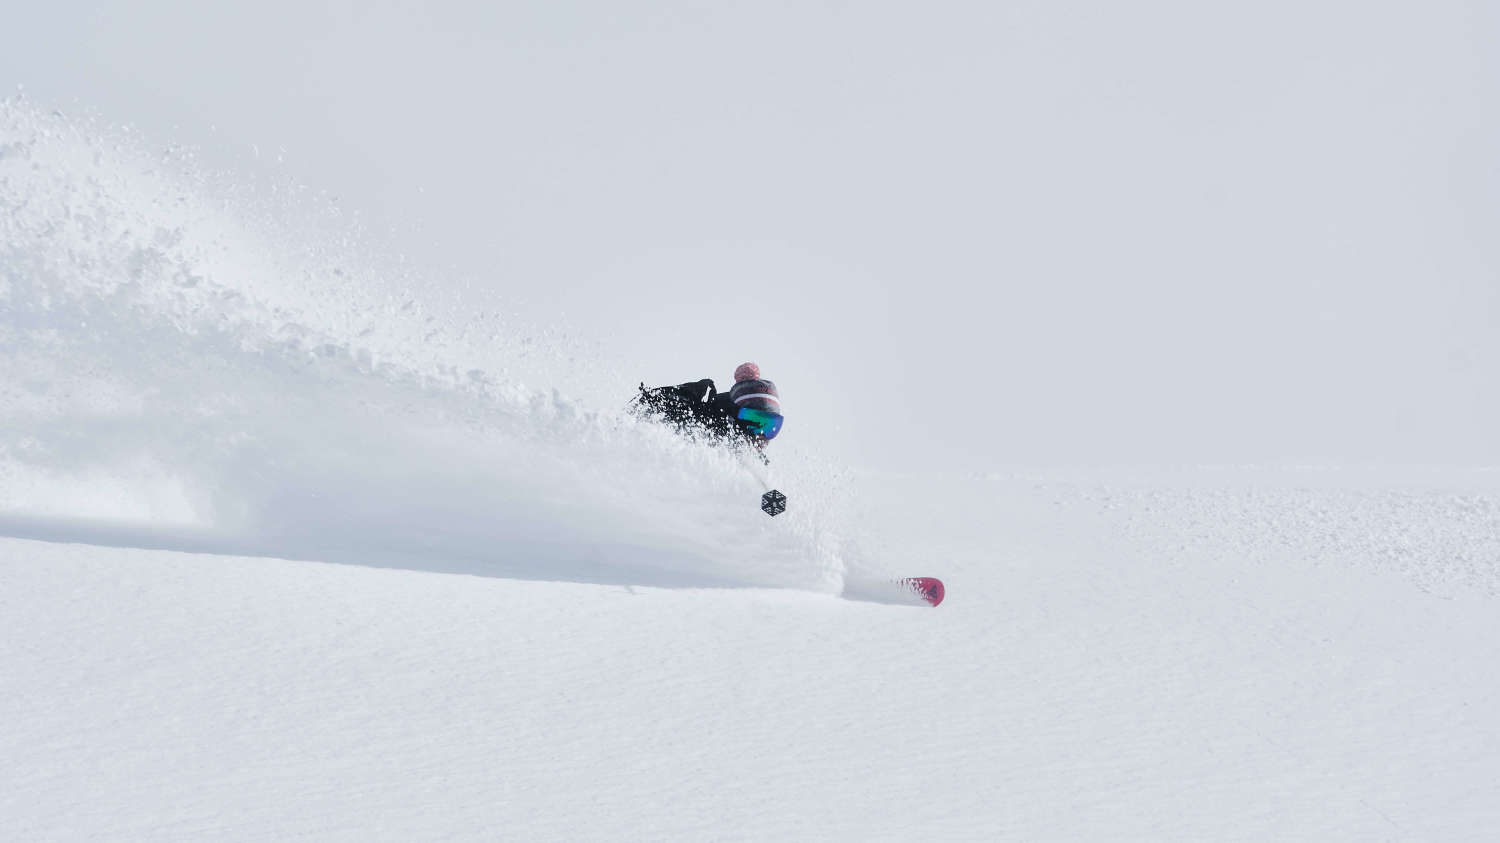 Meilleurs spots ski freeride- Ecrins, La Grave et Piémont